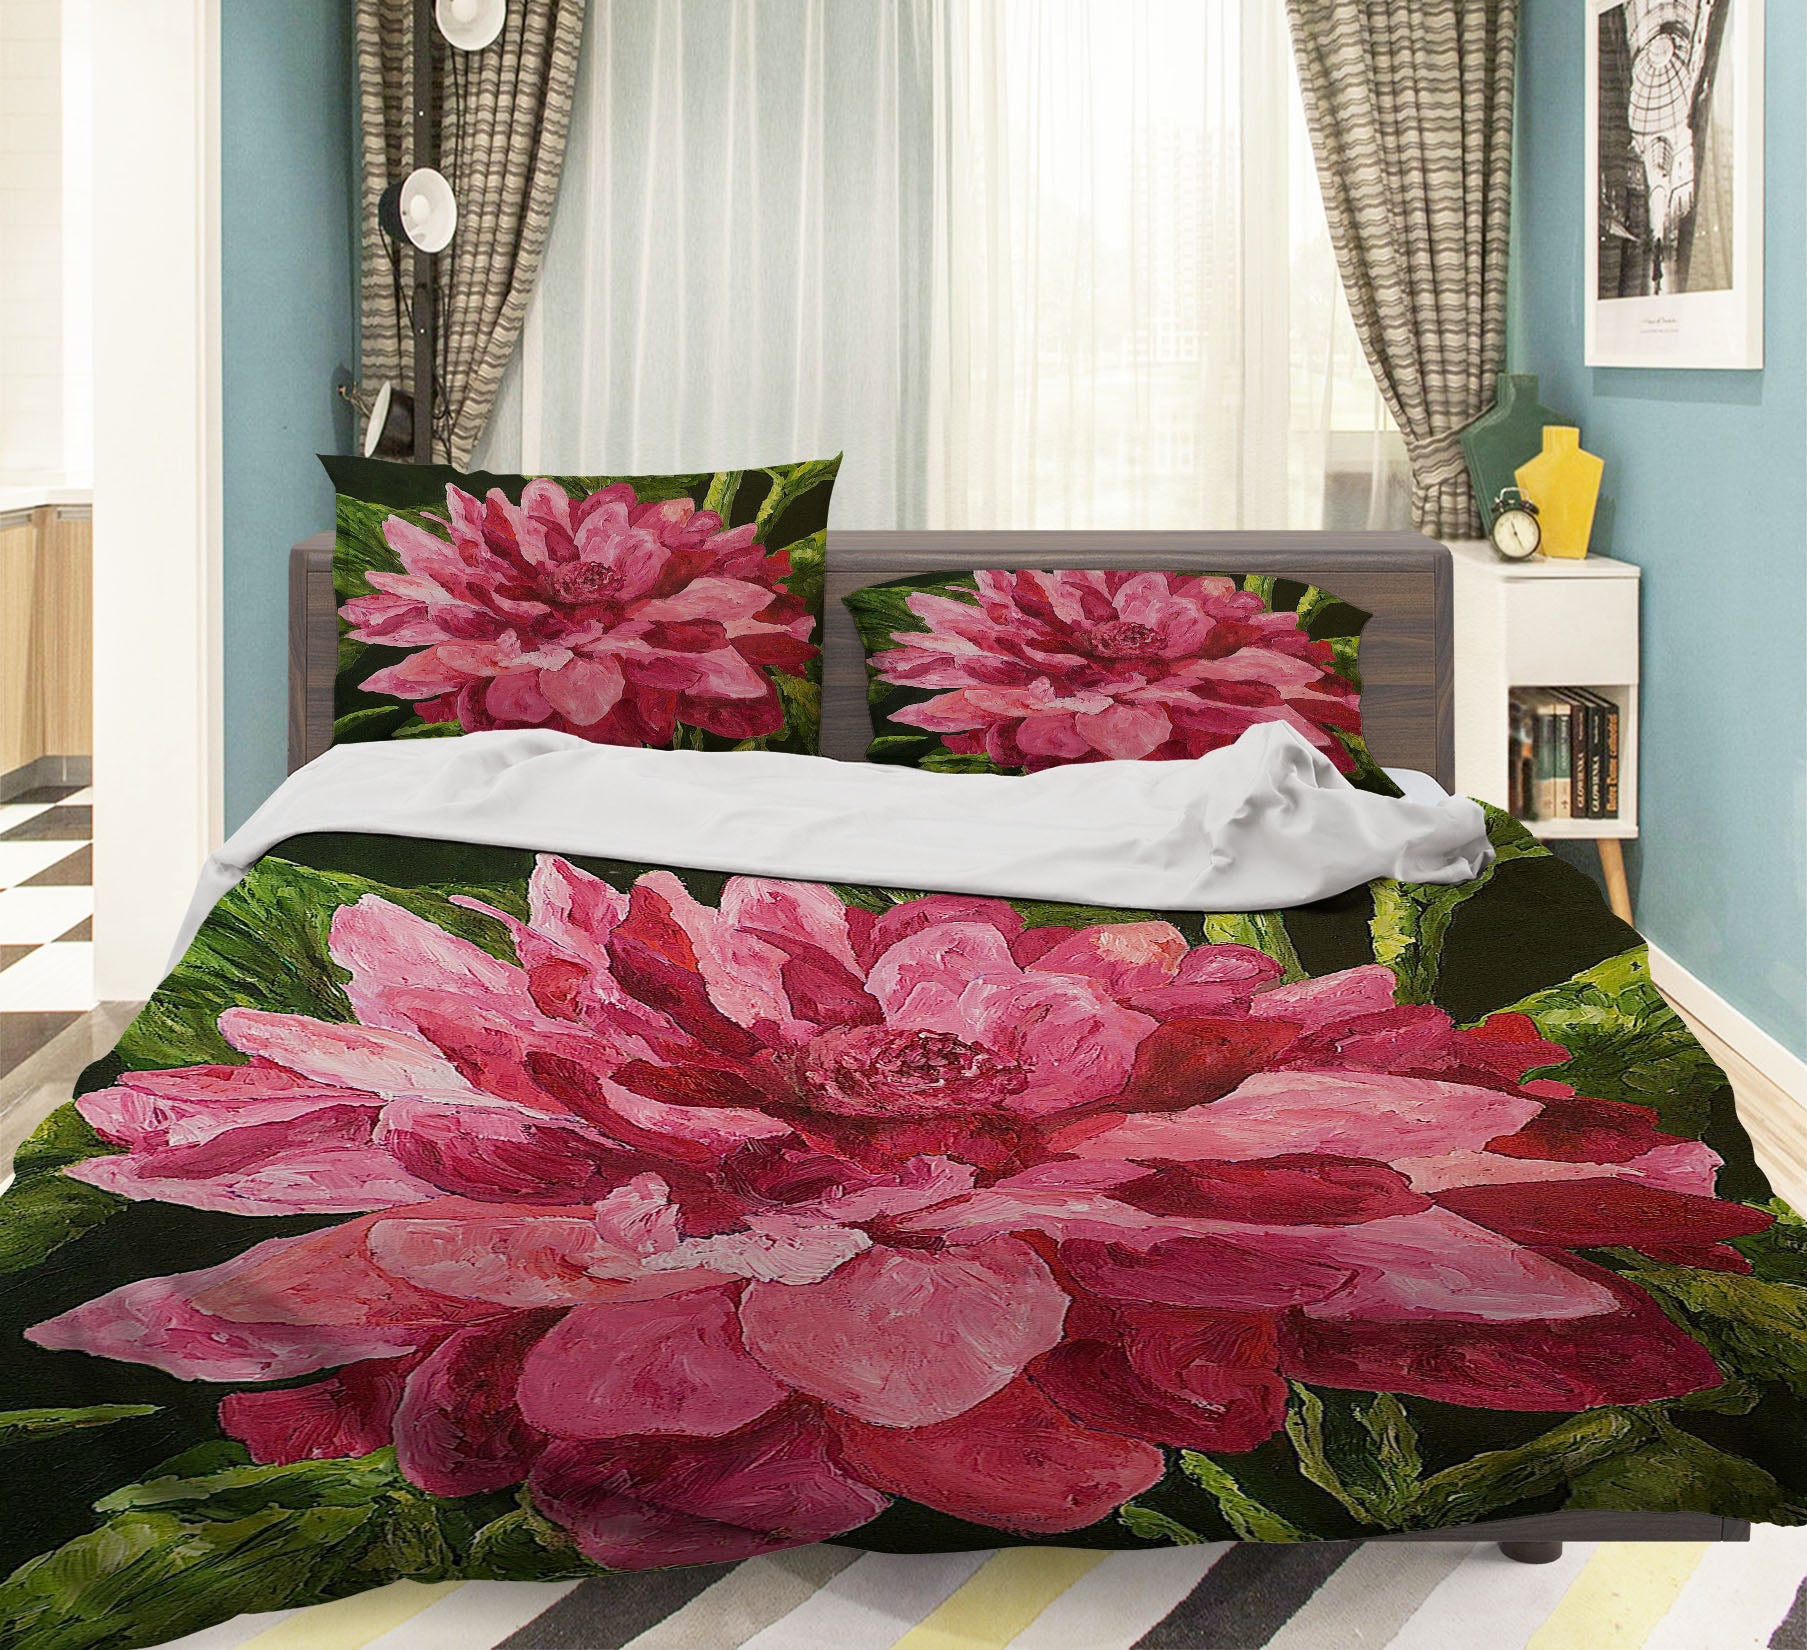 3D Peony Blossom 1041 Allan P. Friedlander Bedding Bed Pillowcases Quilt